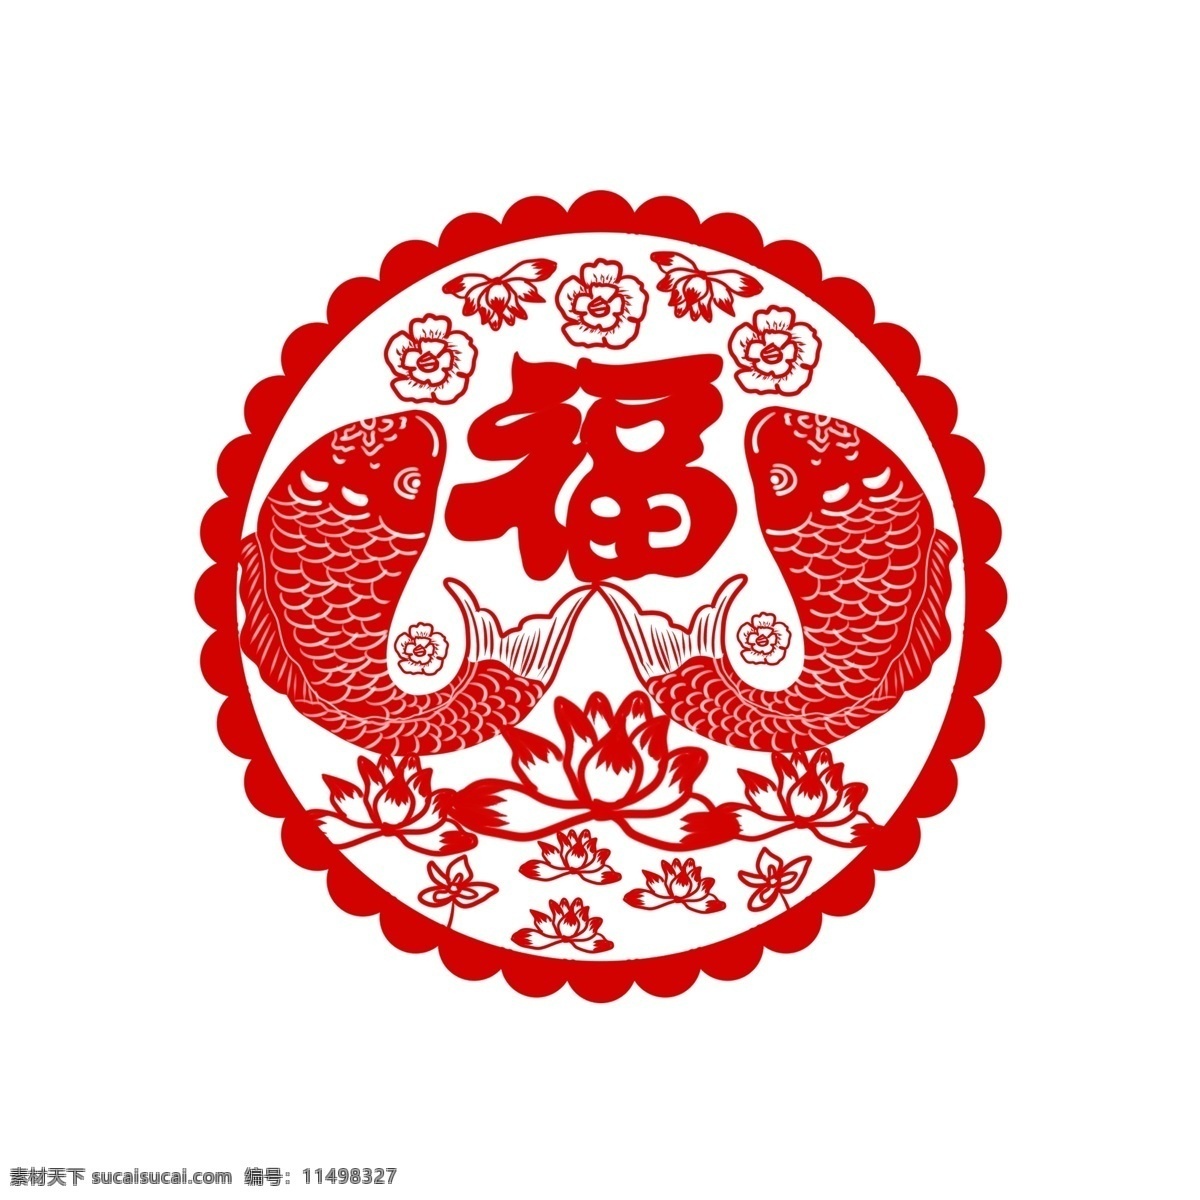 窗花 剪 纸鱼 福字 新年 传统节日 手绘 插画 商用 鲤鱼 福 过年 大红 荷花 发财 花